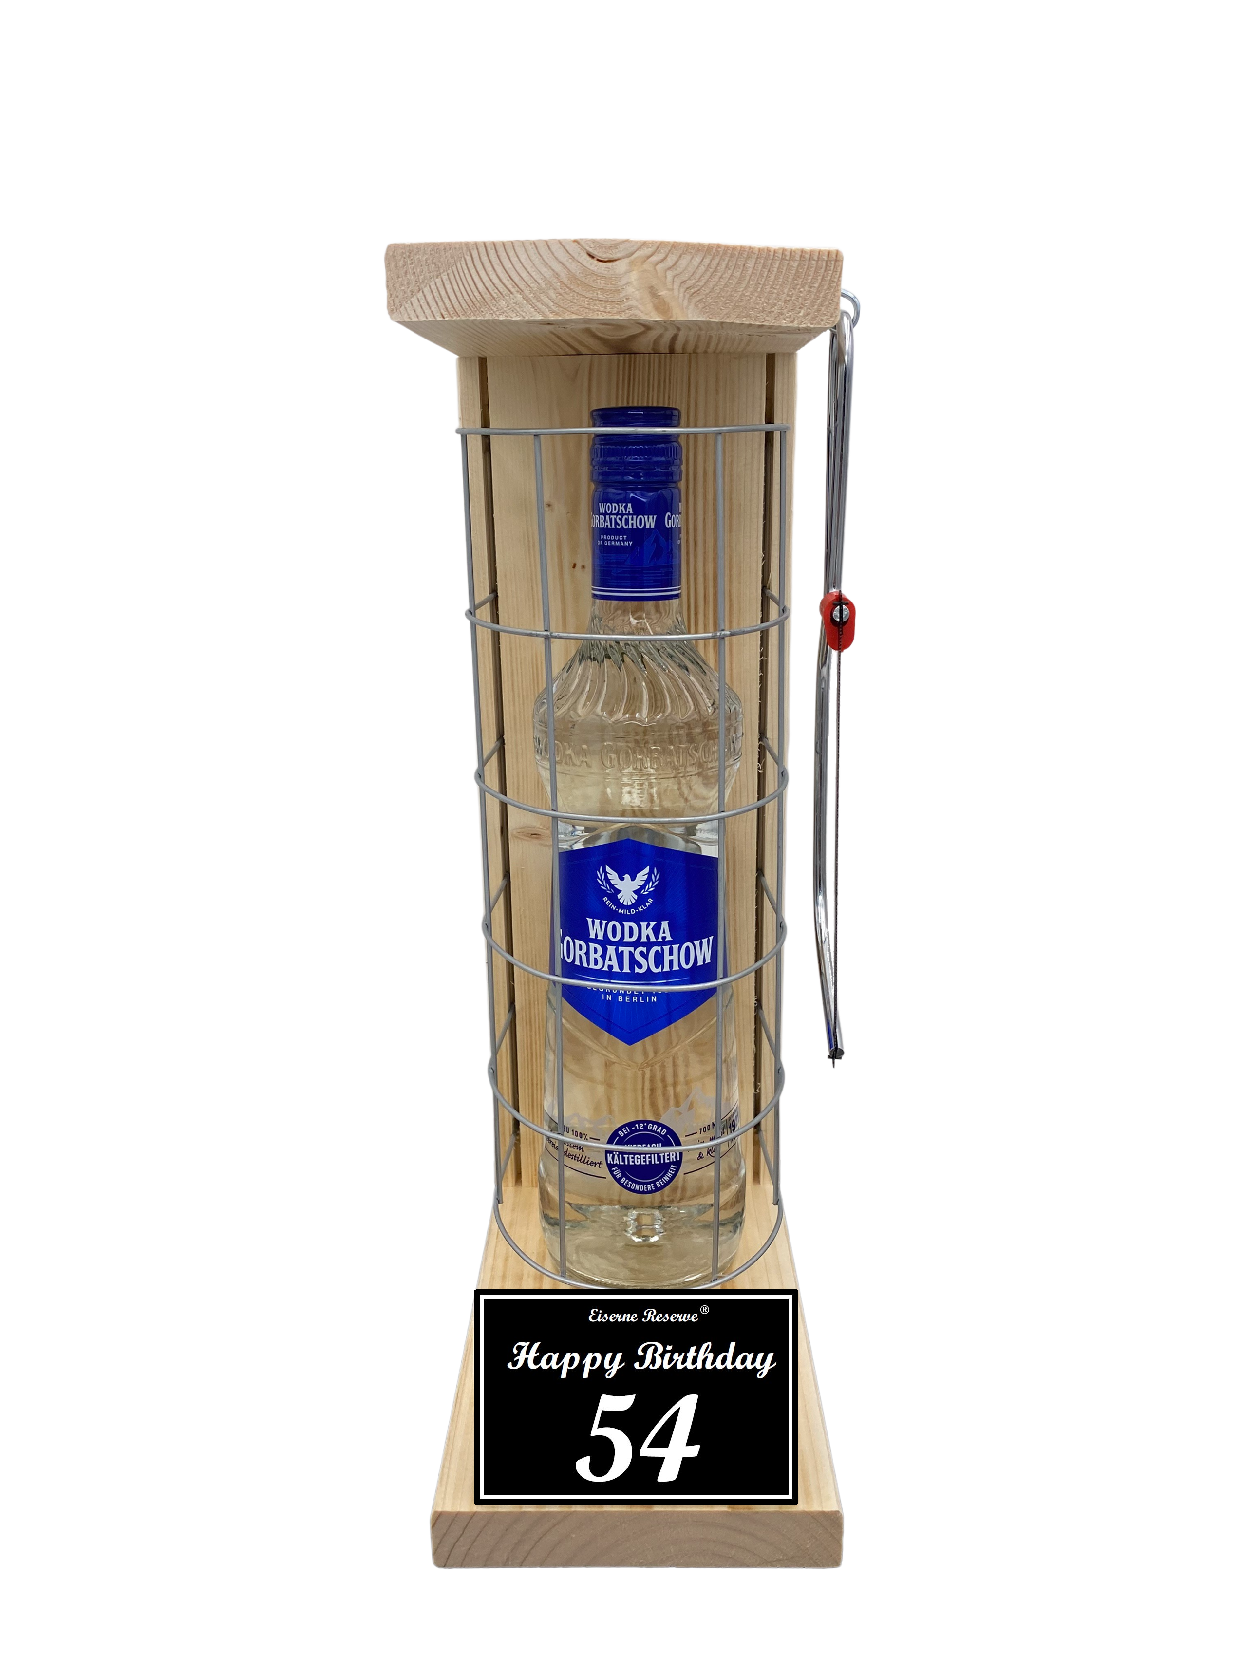 Wodka Geschenk zum 54 Geburtstag - Eiserne Reserve Gitterkäfig